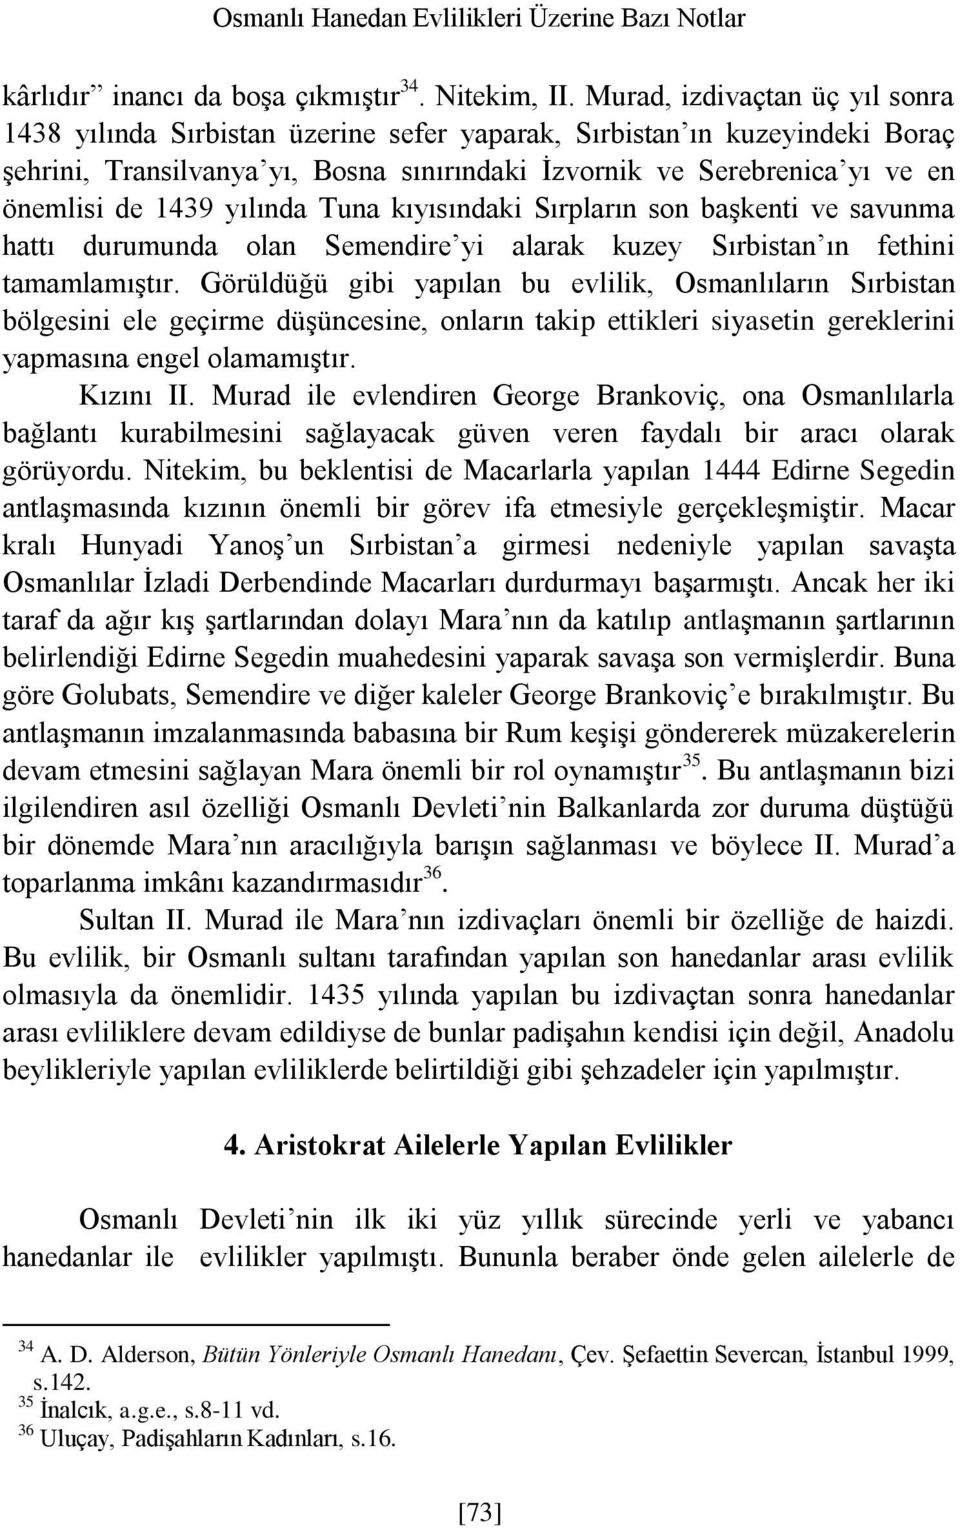 1439 yılında Tuna kıyısındaki Sırpların son başkenti ve savunma hattı durumunda olan Semendire yi alarak kuzey Sırbistan ın fethini tamamlamıştır.